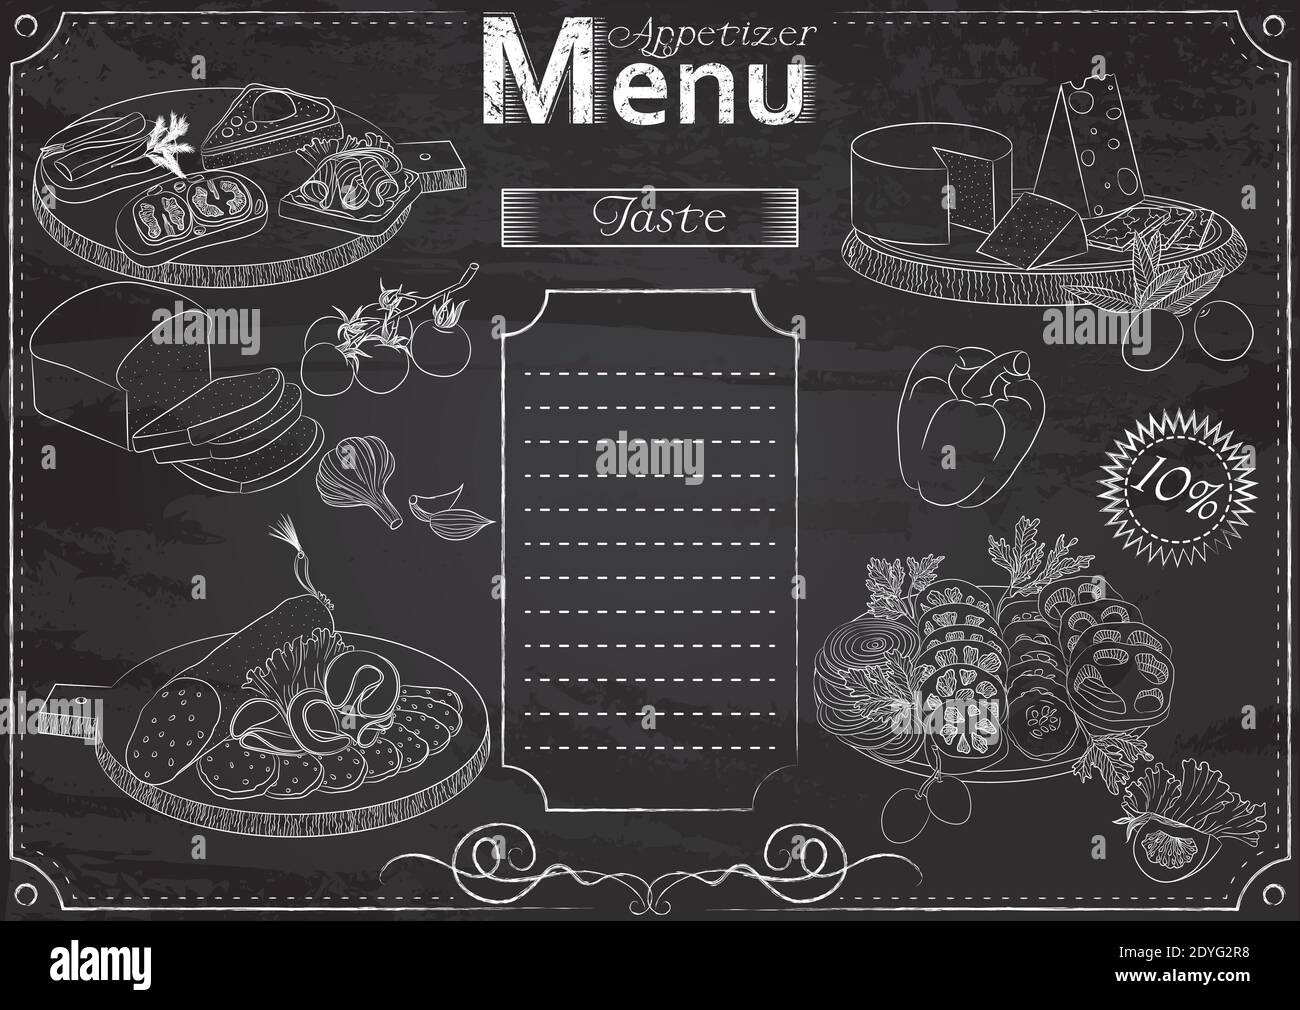 Modèle vectoriel avec des éléments de hors-d'œuvre pour le menu stylisé comme dessin à la craie sur tableau noir.Design pour un restaurant, un café ou un bar Illustration de Vecteur